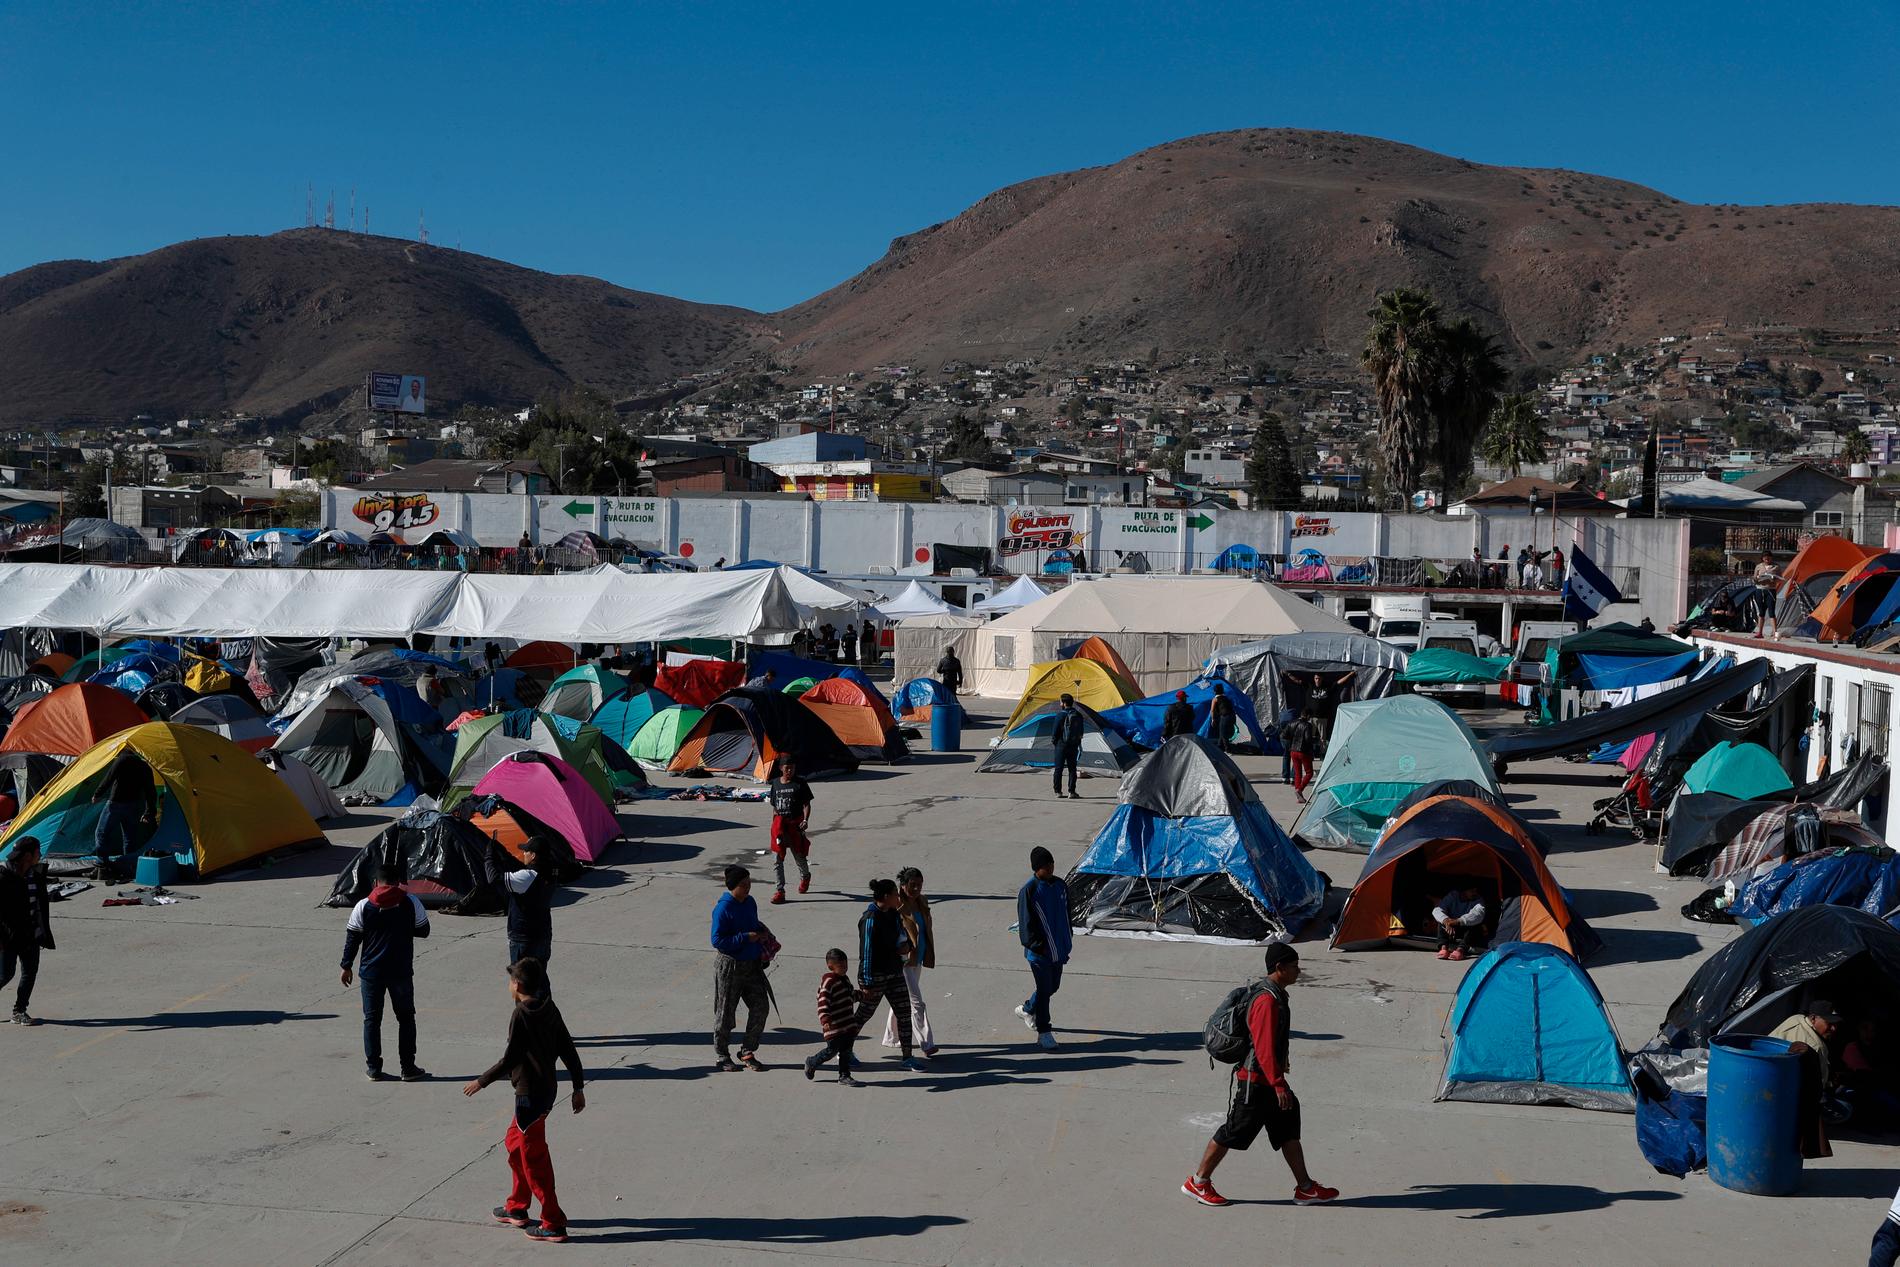 Ett migrantläger i den mexikanska gränsstaden Tijuana. Här övernattade många medlemmar ur den centralamerikanska så kallade migrantkaravan som under hösten vandrade mot USA.